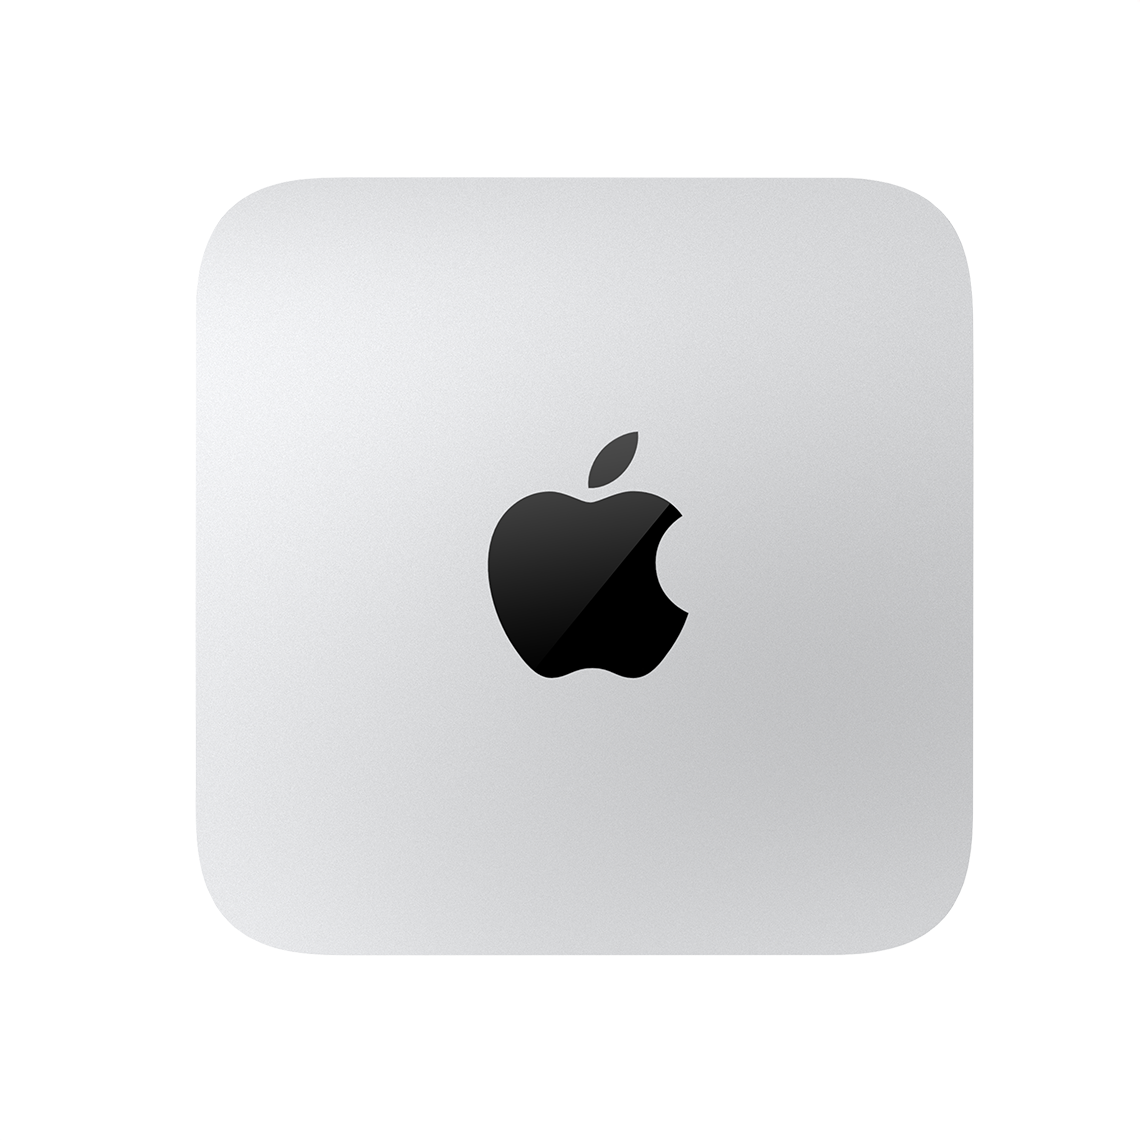 Apple Mac Studio M1 Ultra - 64GB RAM, 1TB SSD, 48-Core GPU, New